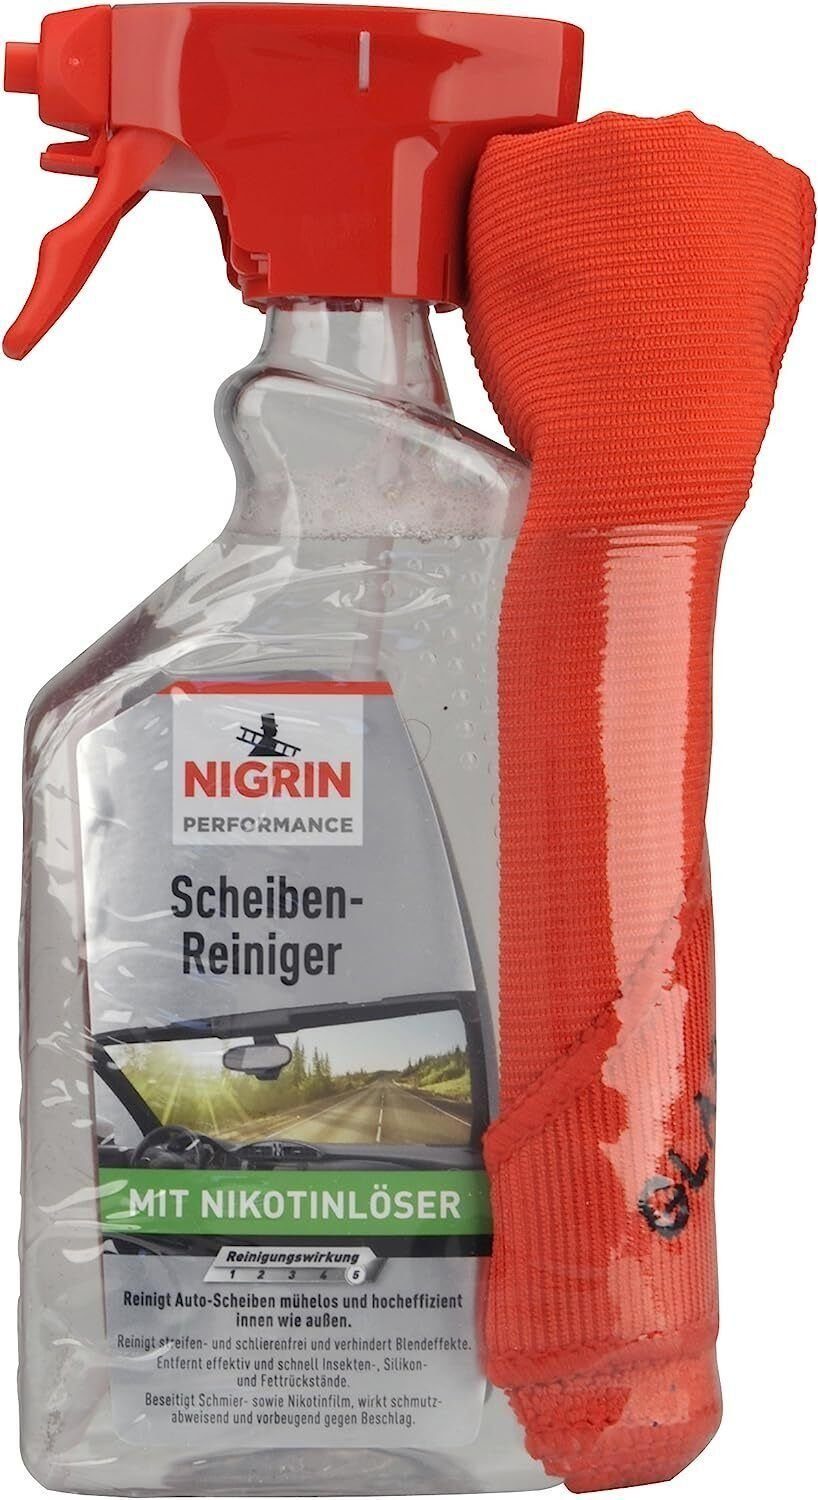 Würth Aktiv-Scheibenreiniger Spray 2x500ml online kaufen